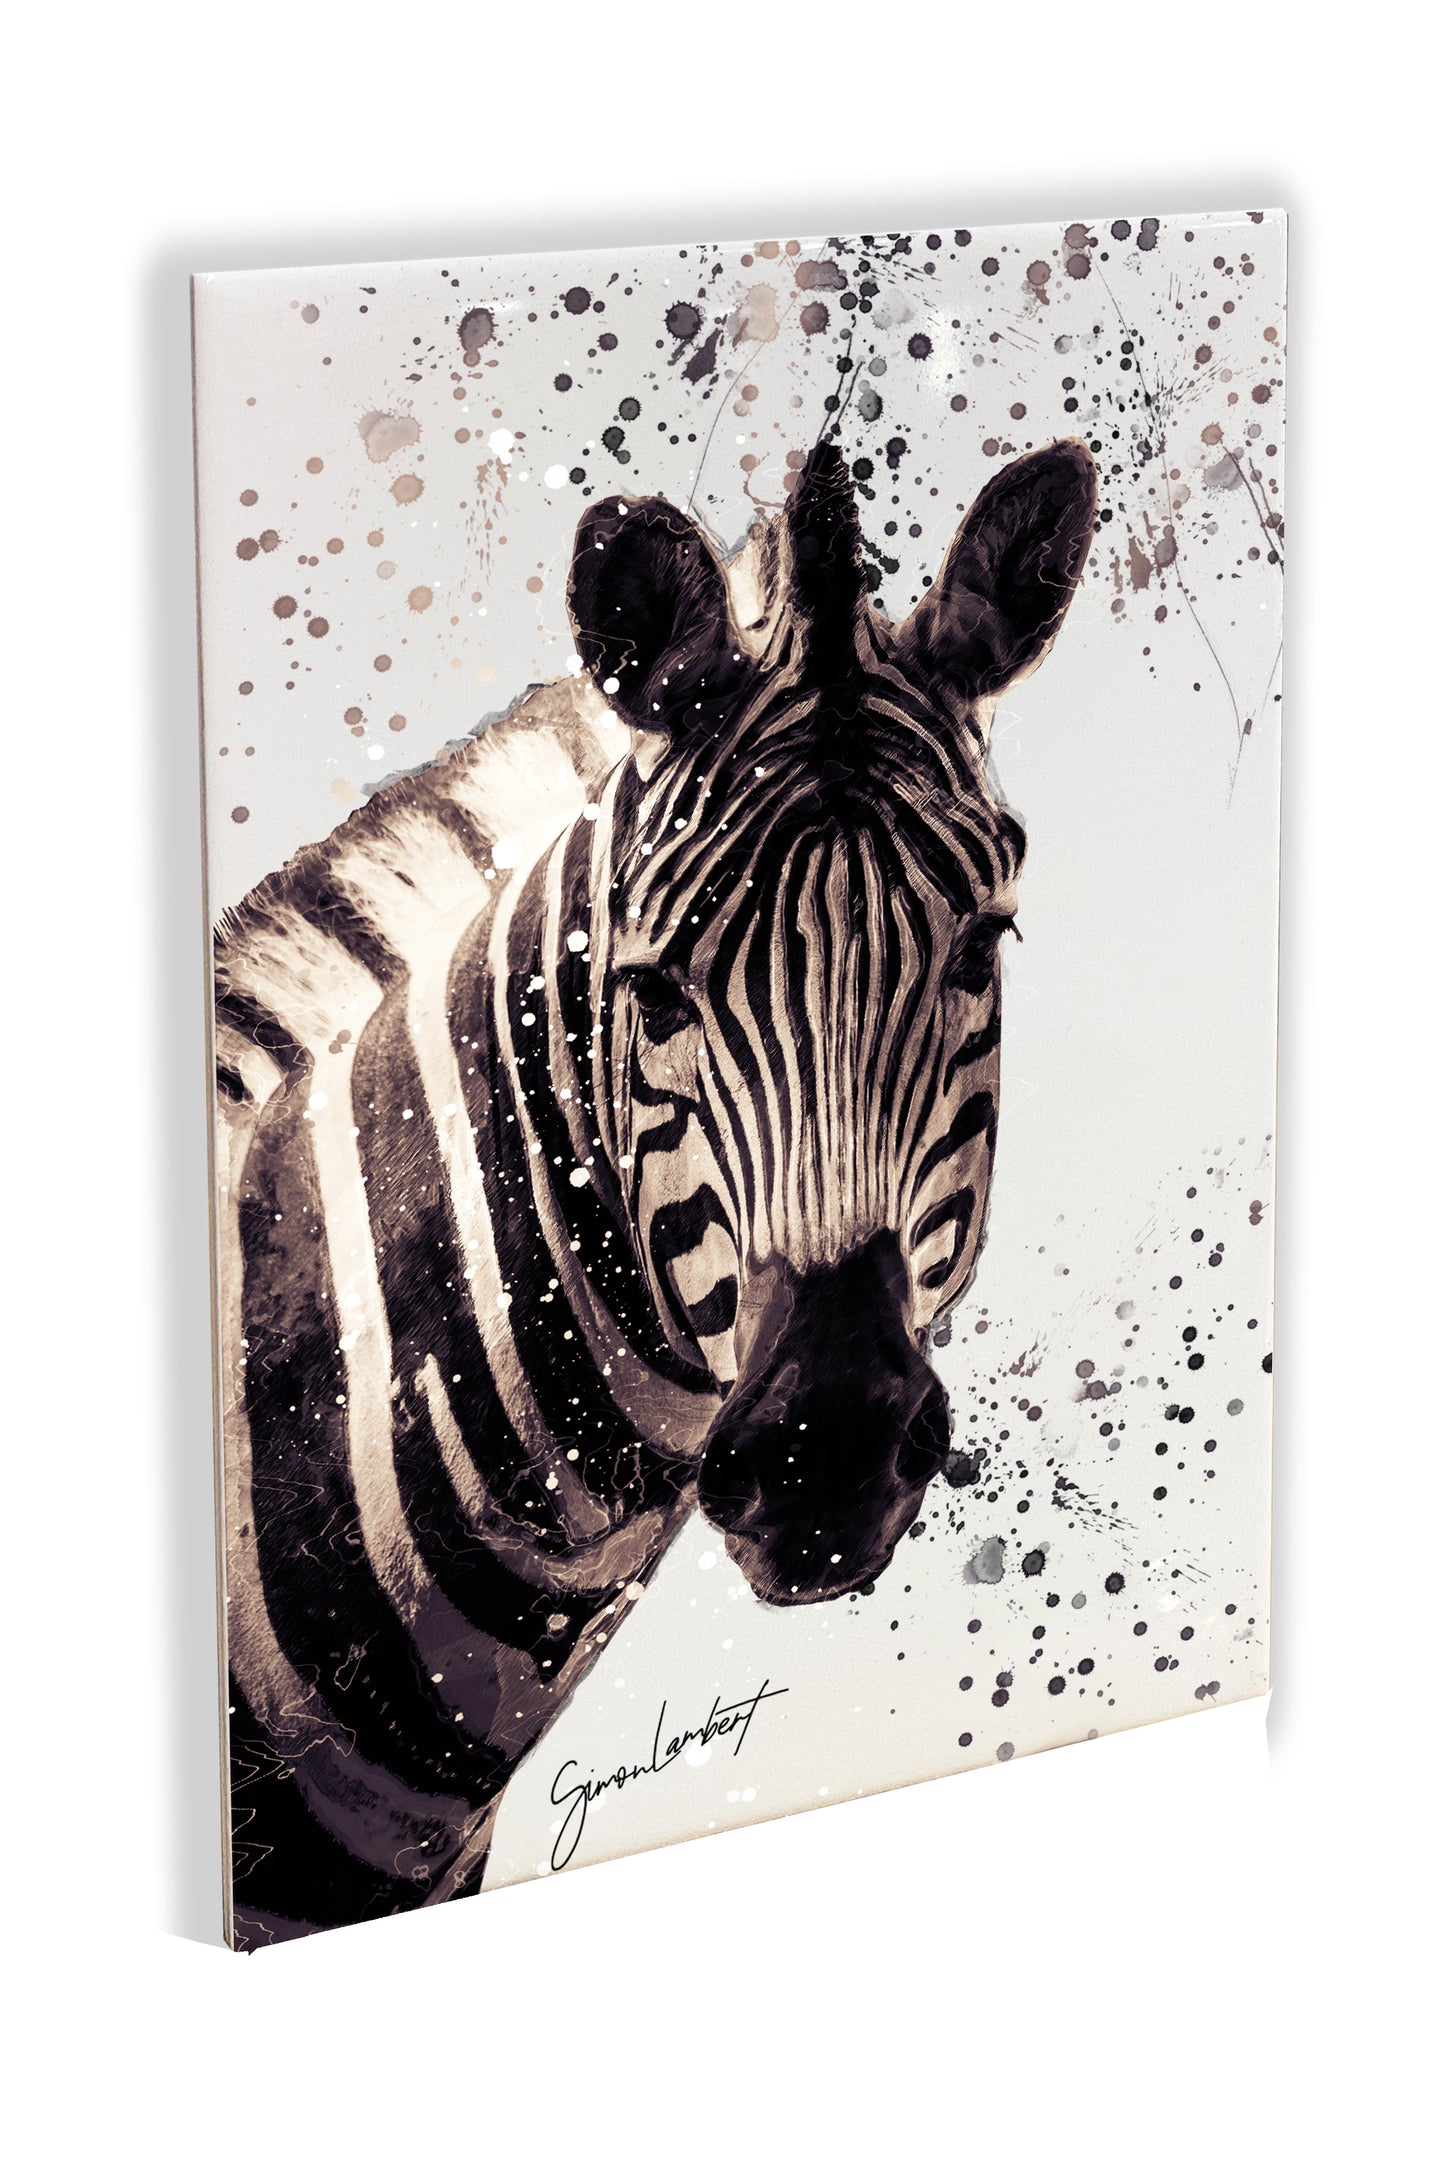 Zebra Portrait Brush Splatter Style Artwork - Framed CERAMIC TILE Art